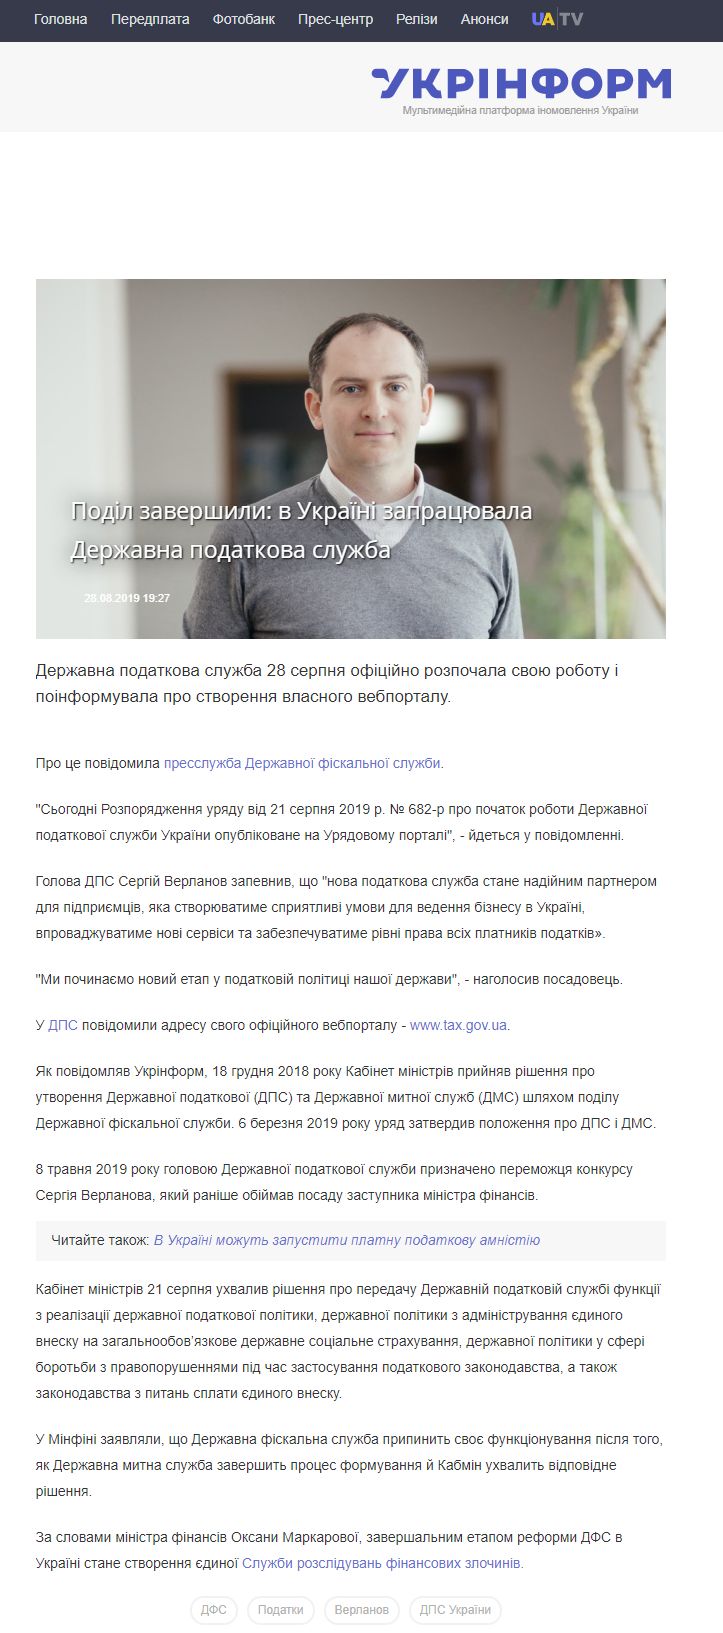 https://www.ukrinform.ua/rubric-economy/2768712-podil-zaversili-v-ukraini-zapracuvala-derzavna-podatkova-sluzba.html